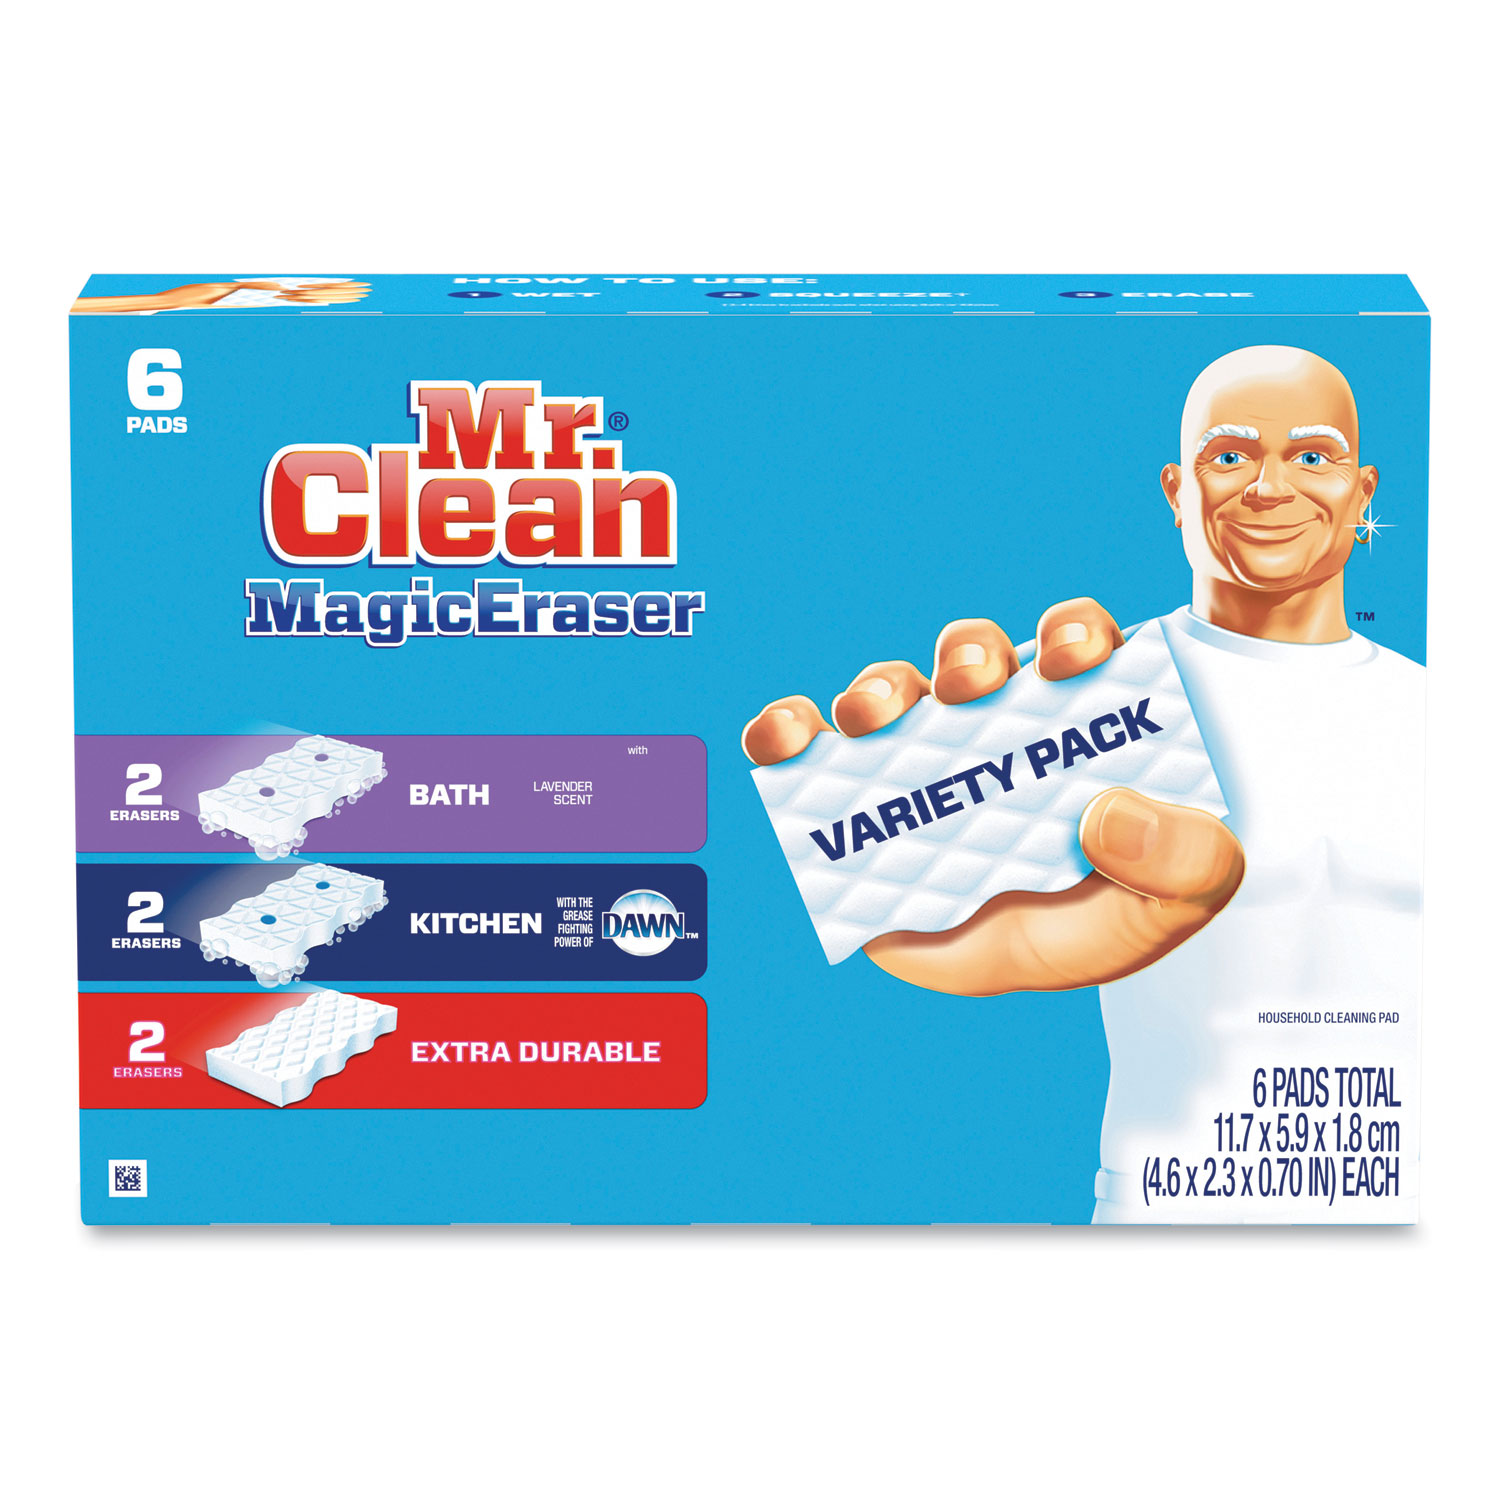 Bộ lau chùi Magic Eraser đa dạng, bền bỉ và phù hợp cho phòng tắm và nhà bếp, là giải pháp đơn giản và tiện lợi để dọn dẹp ngôi nhà của bạn. Đừng chần chừ, hãy sử dụng sản phẩm này ngay hôm nay!